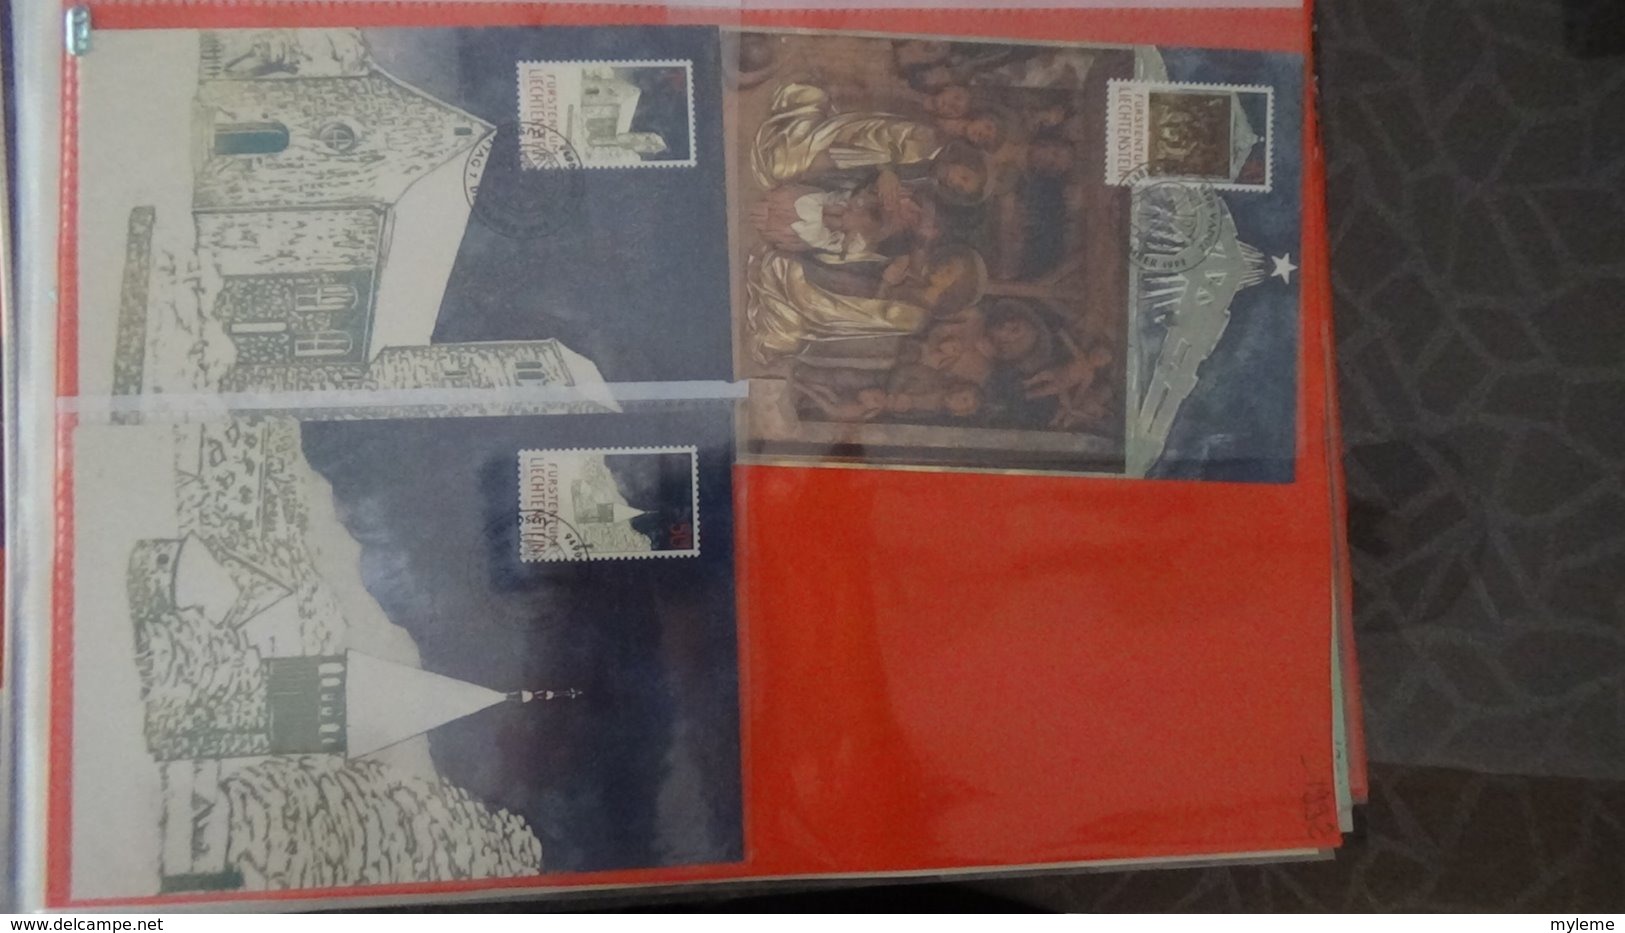 Très belle collection de 152 cartes maximum du Liechsteinstein de 1986 à 1994